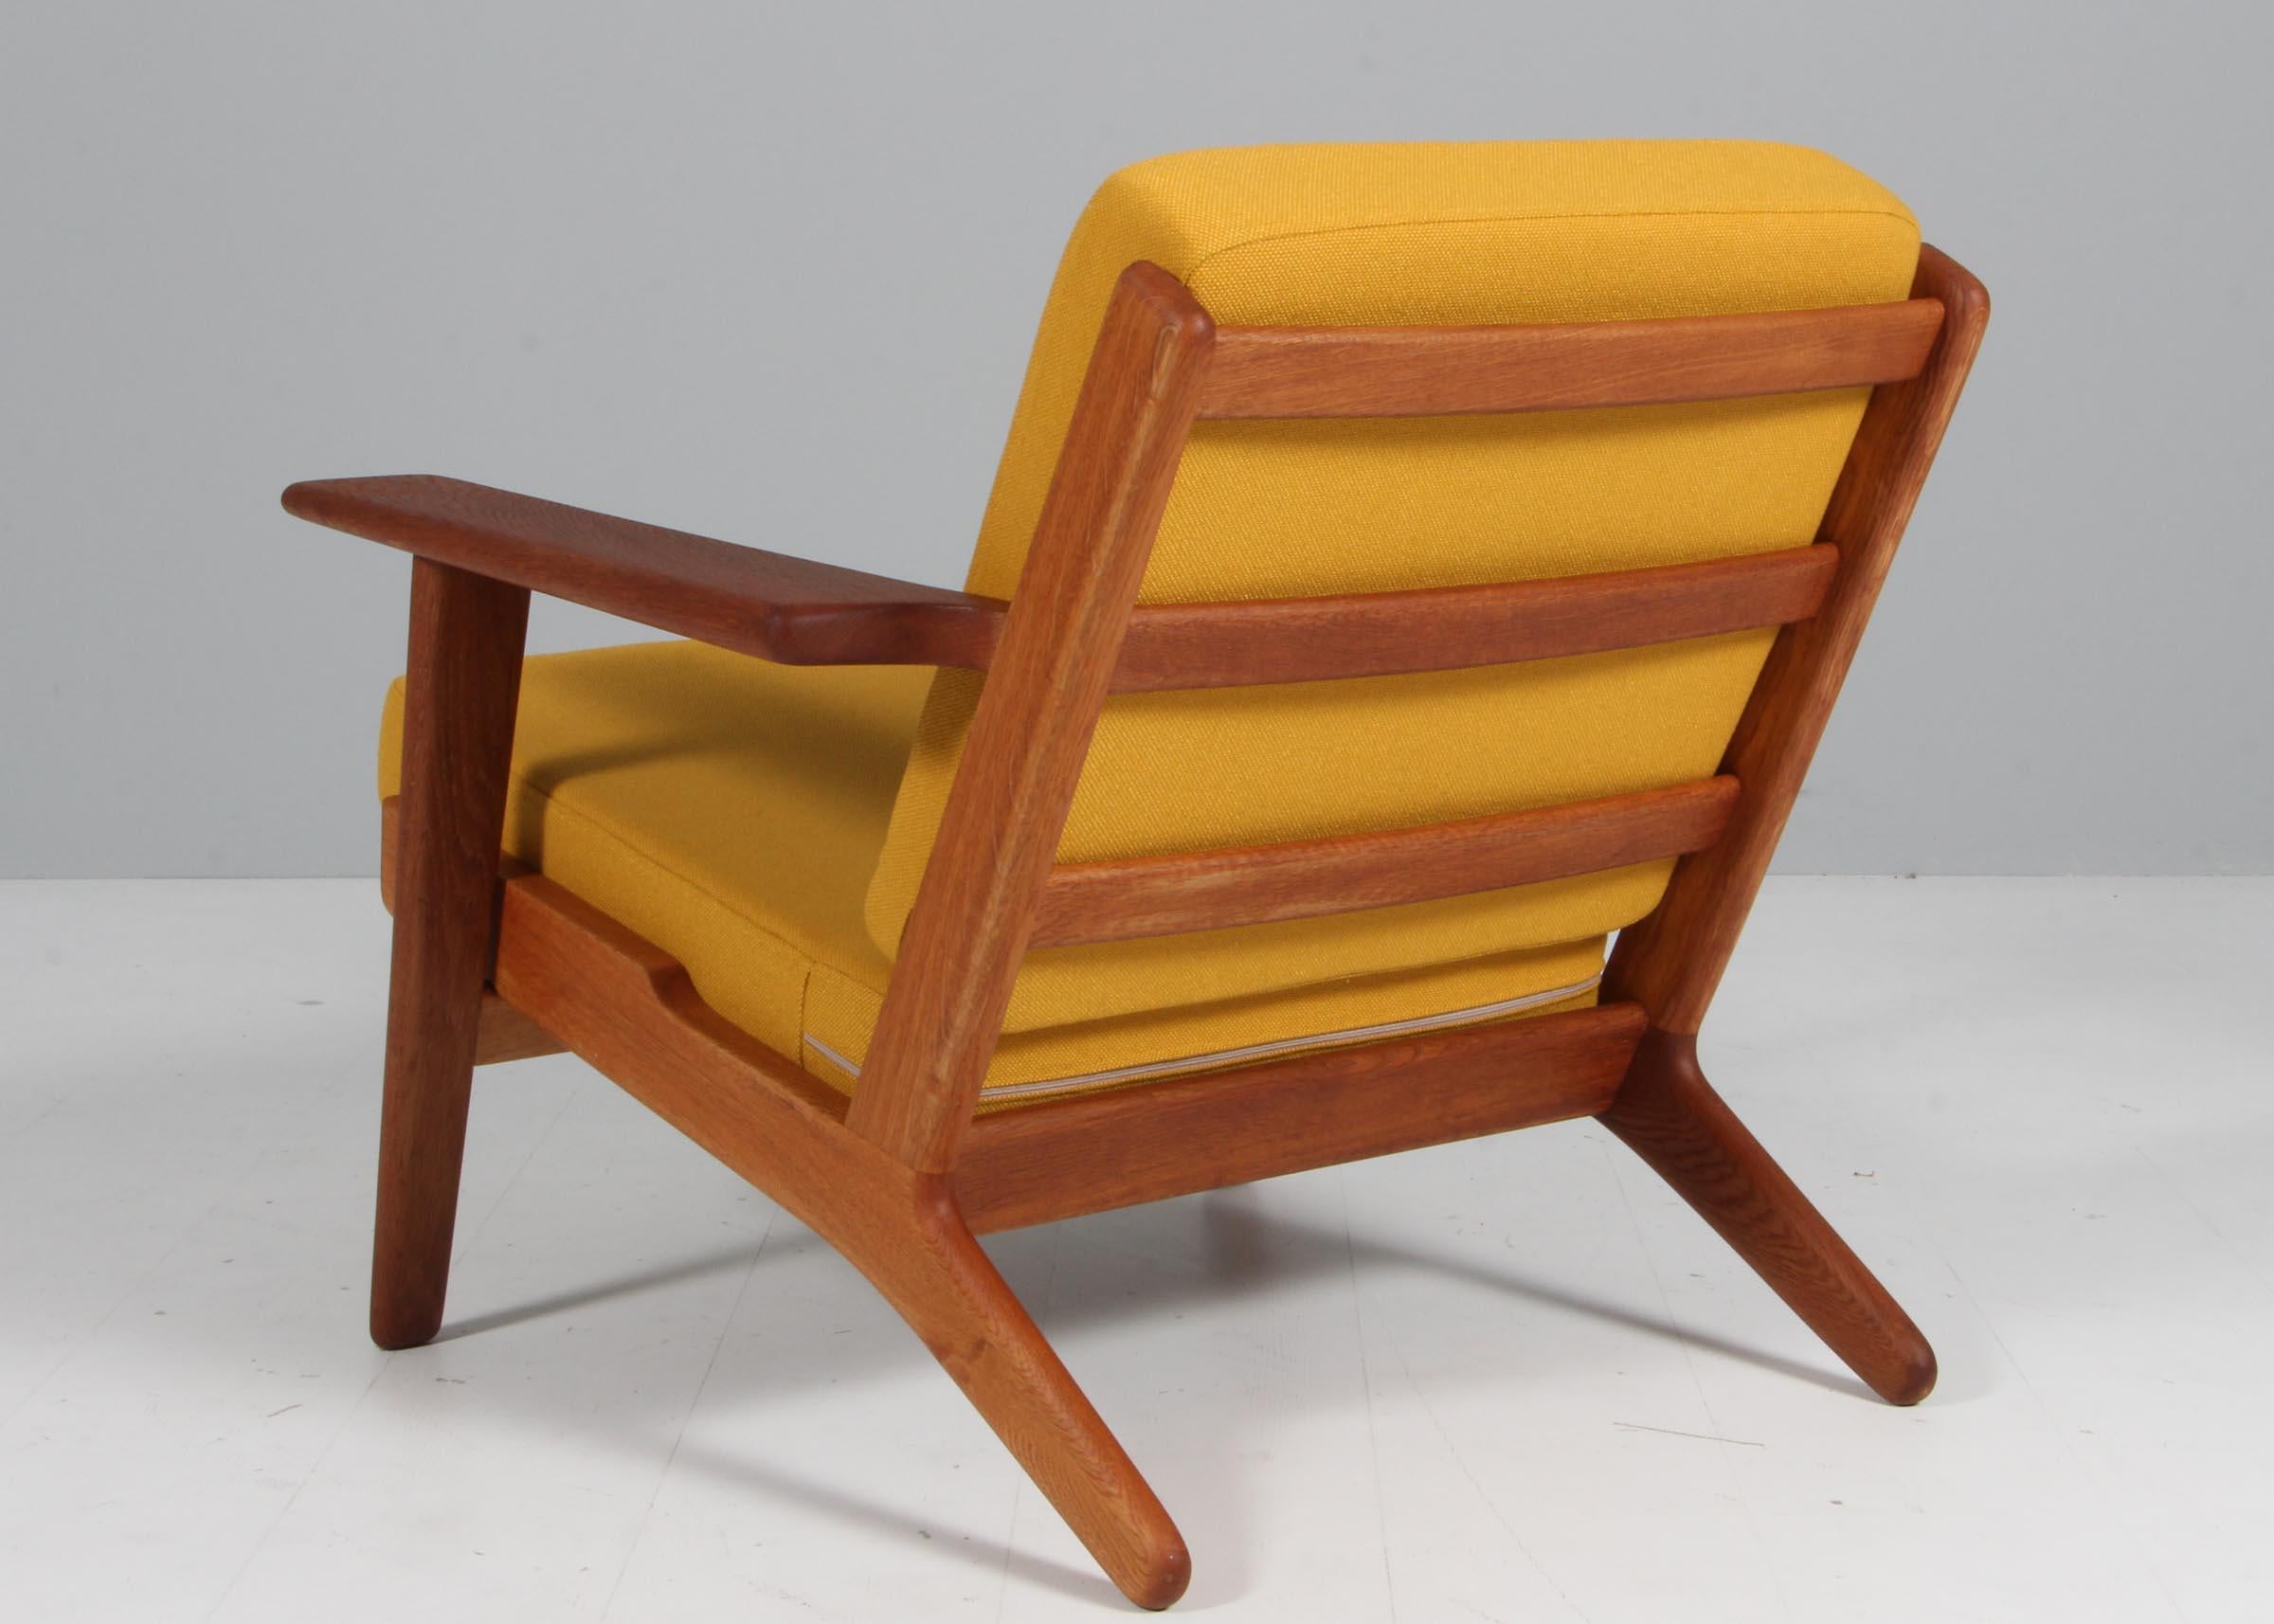 Mid-20th Century Hans J. Wegner, Lounge Chair, Model 290, oil treated Oak, 1970s Denmark